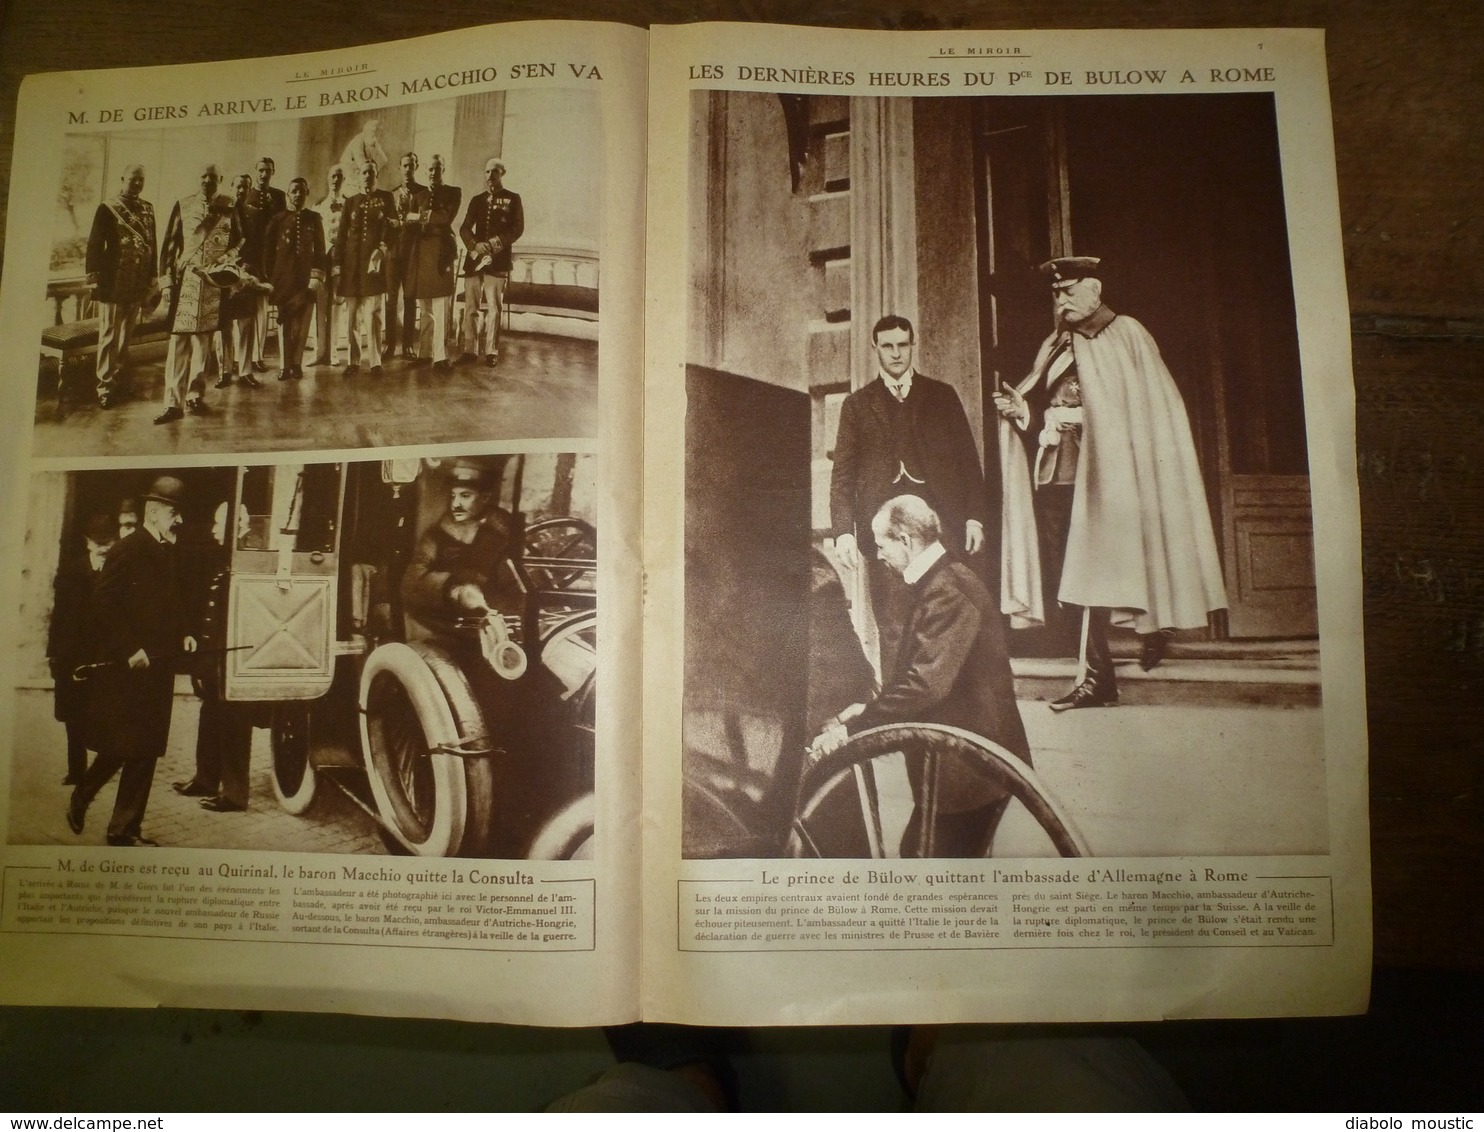 1915 LE MIROIR : St-Mihiel;Mensonges et cinéma allemand;Le "cheval de Troie" est aussi RiverClyde;etc